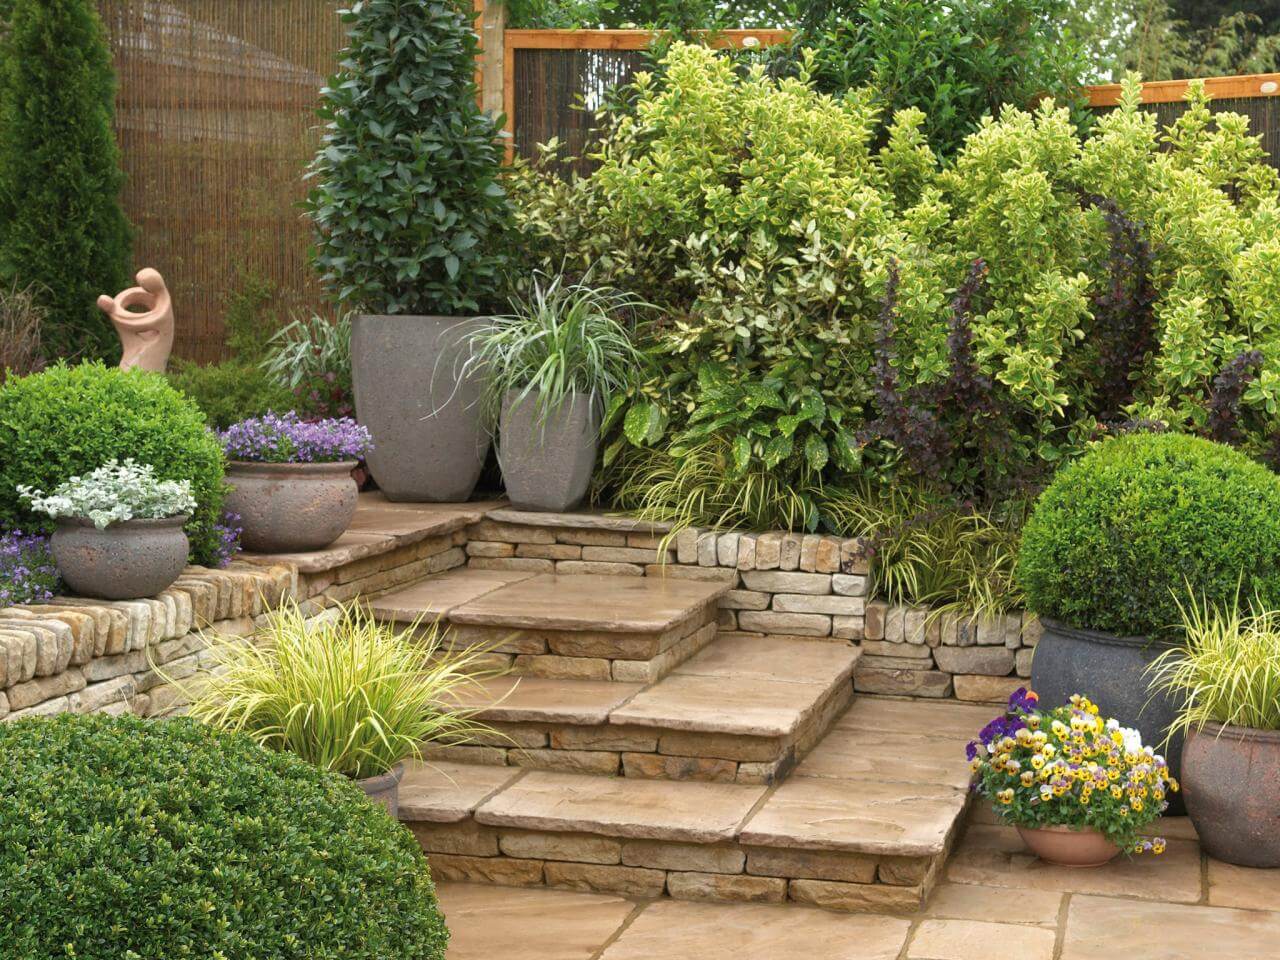  home garden landscape designs